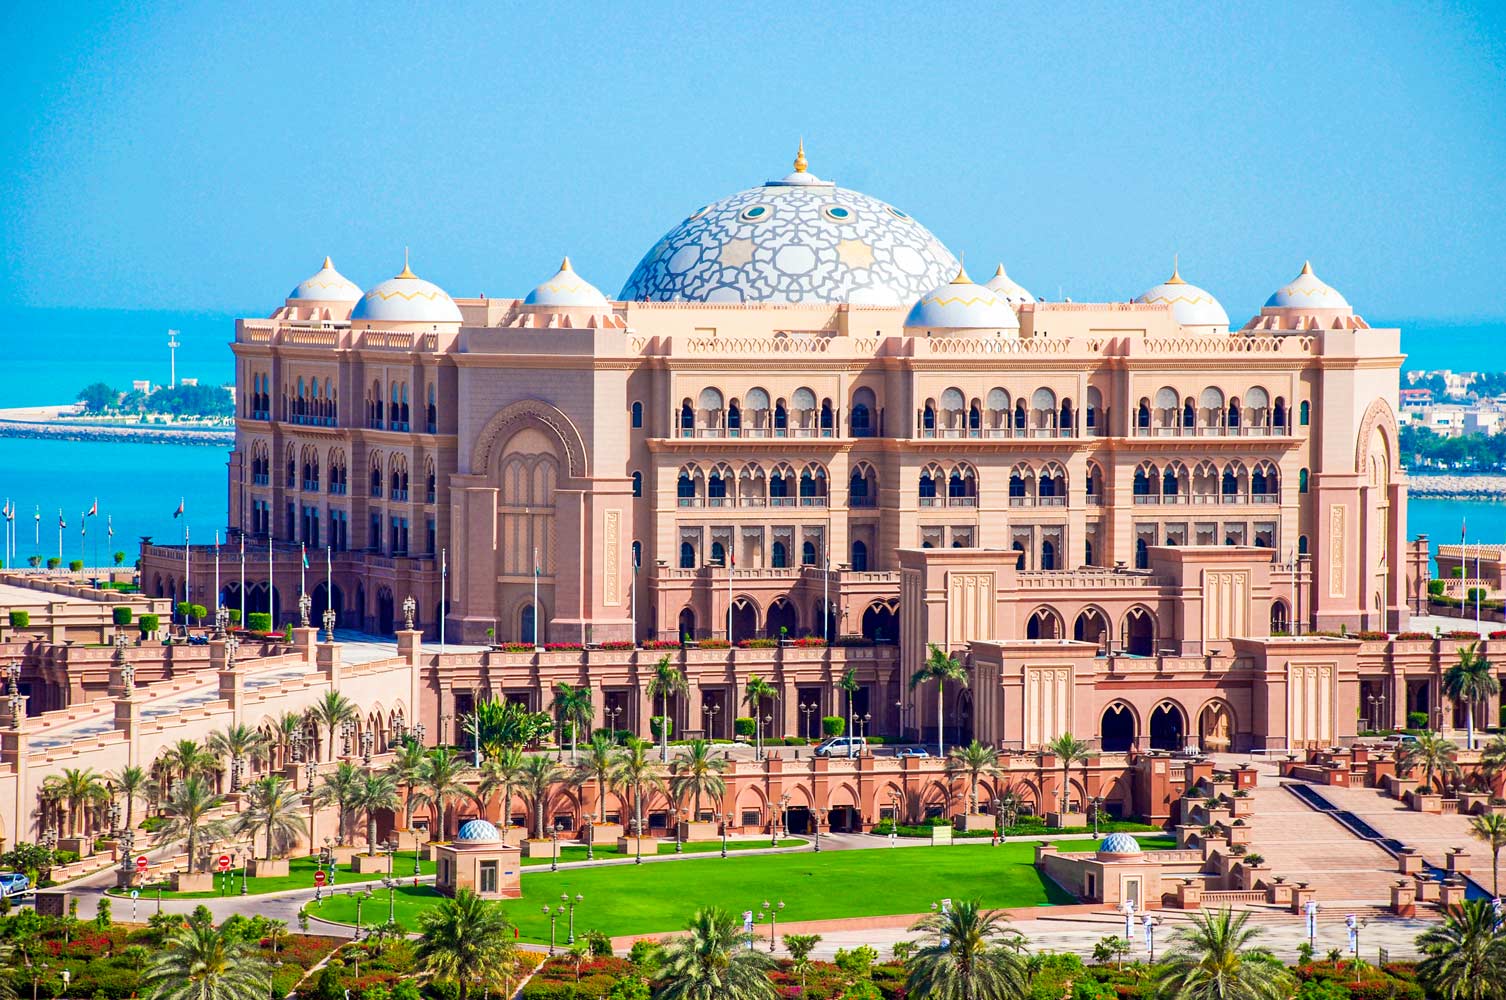 Emirates palace